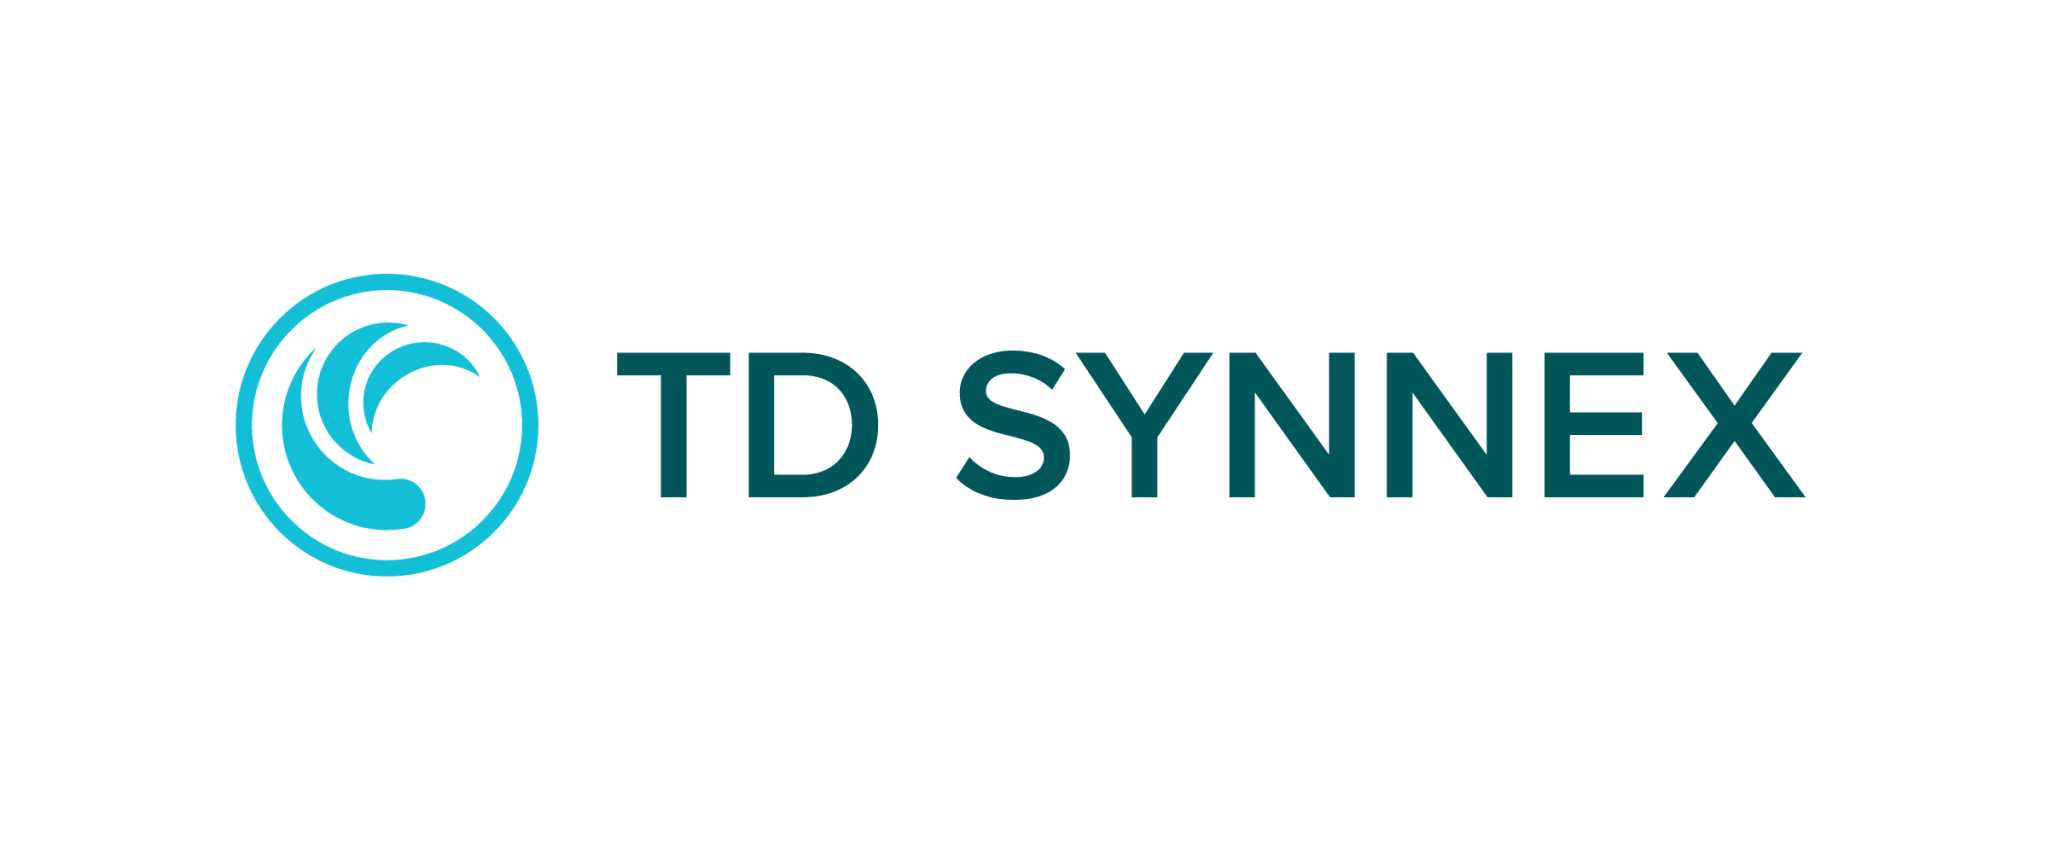 TD SYNNEX Austria GmbH Plattform Industrie 4.0